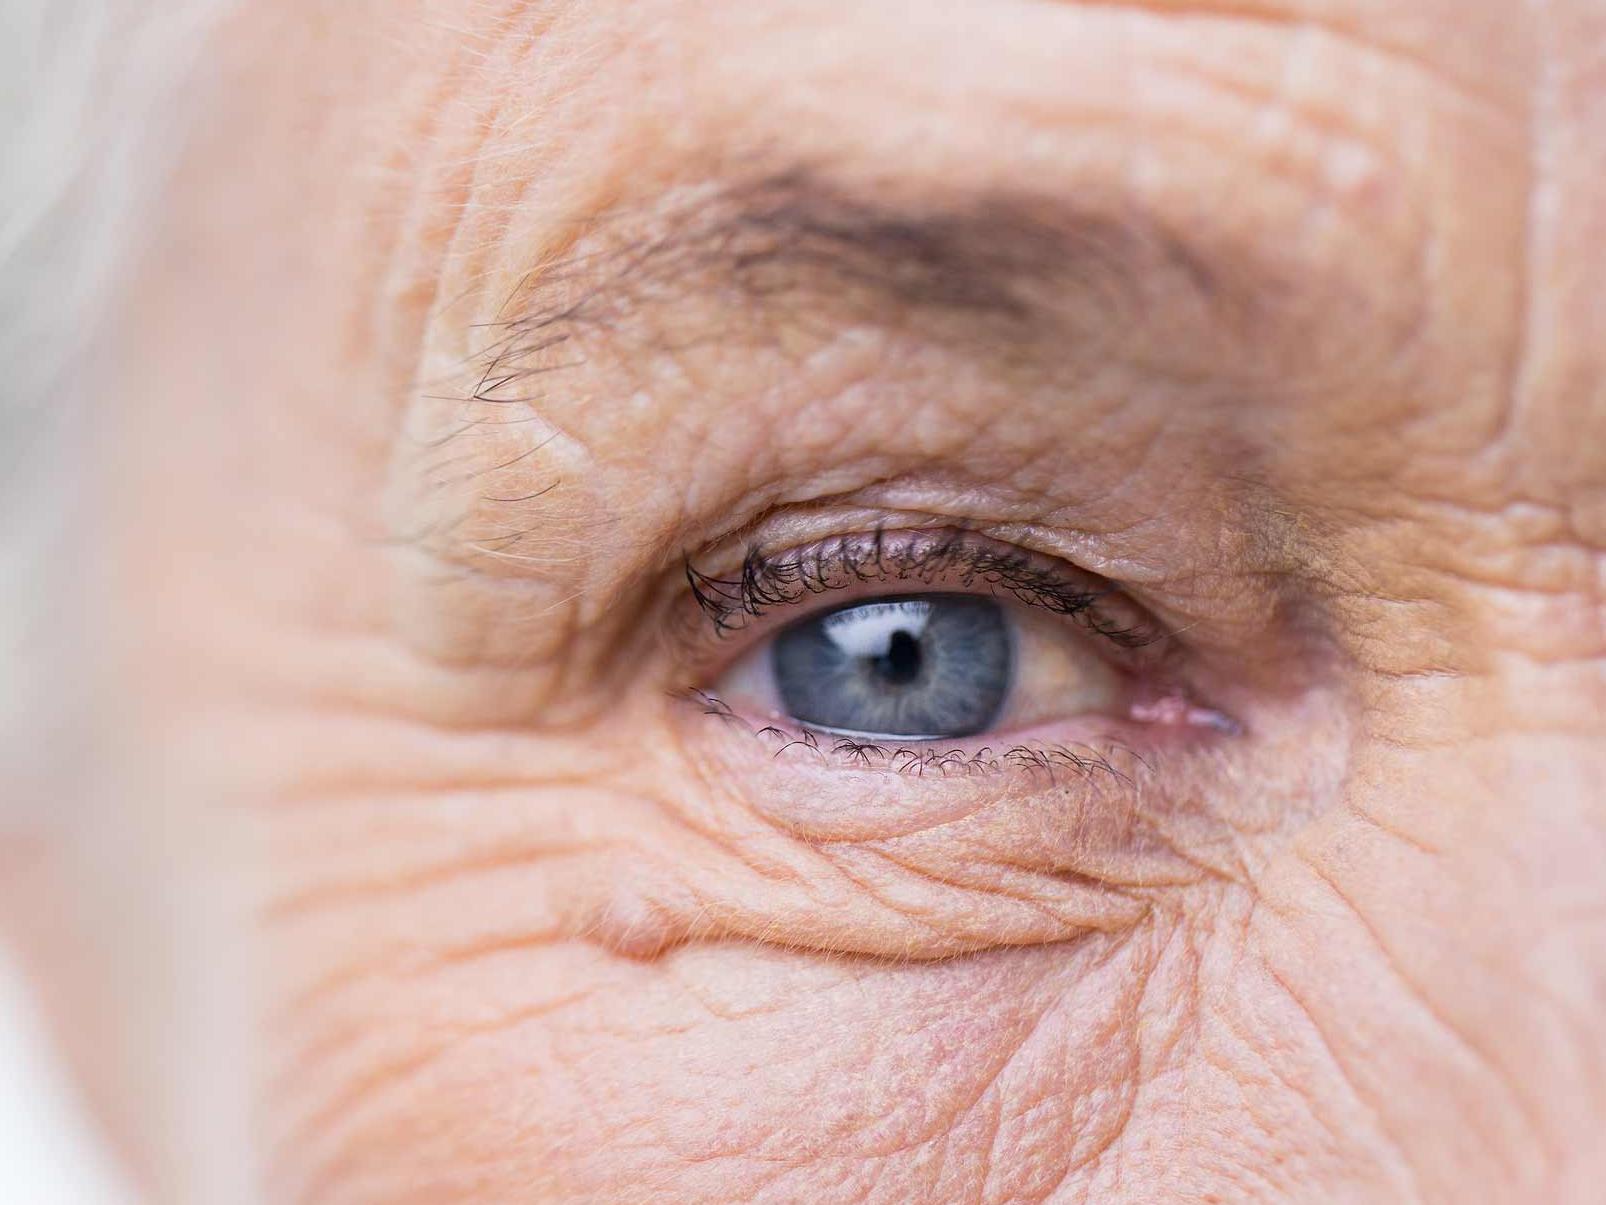 画像は、目の付属器官への危険の可能性を示す、不健康な目のクローズアップです。 